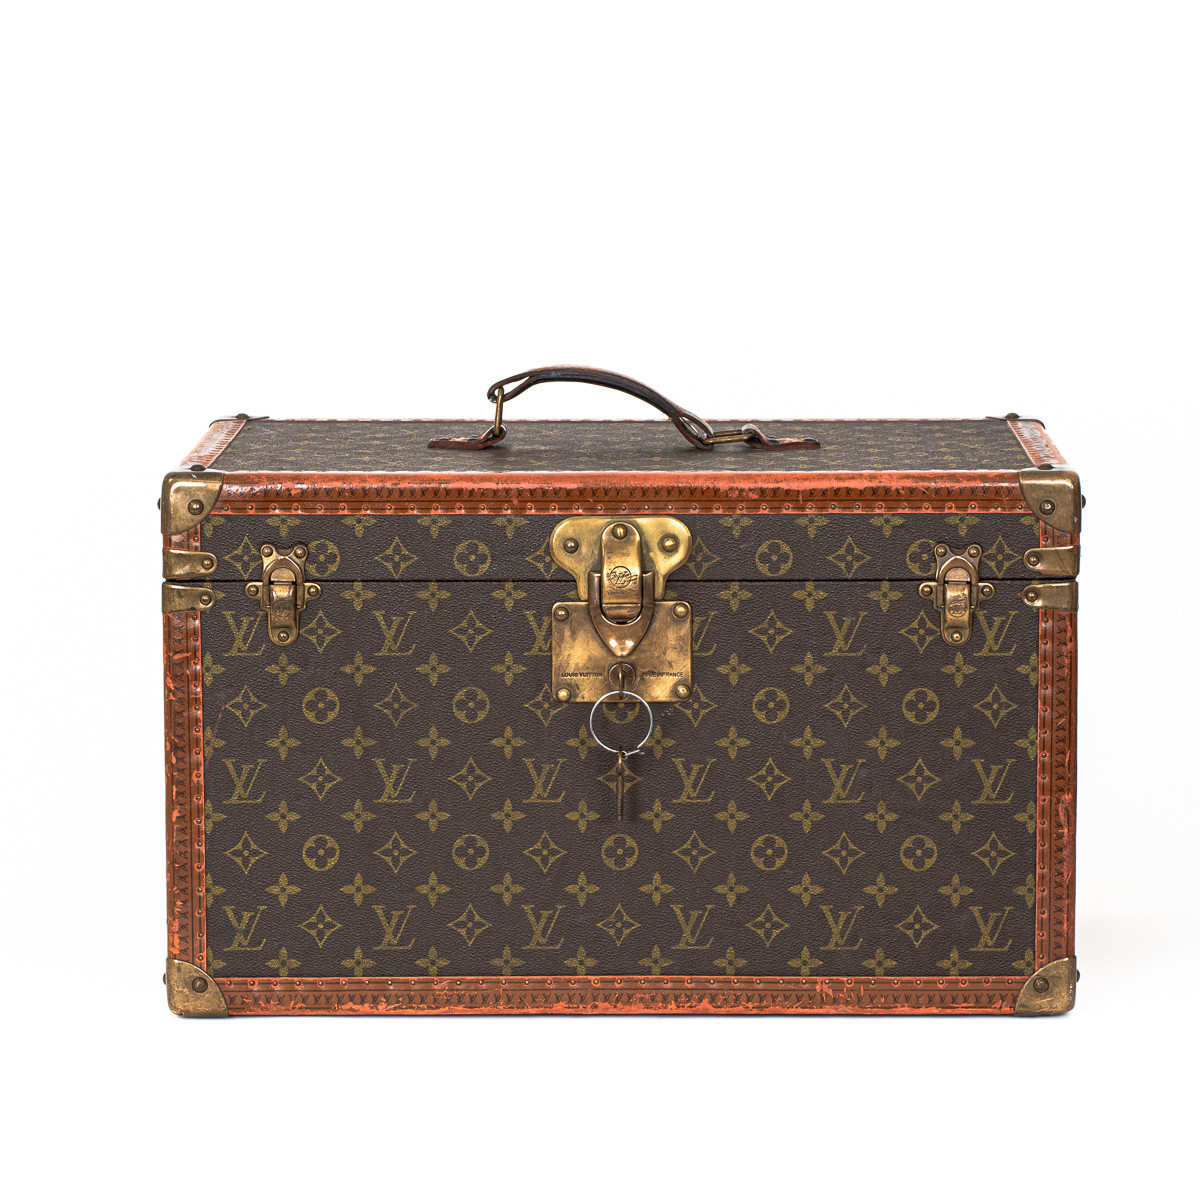 Caisses, Boîtes & Paniers pour Louis Vuitton en ligne chez Pamono